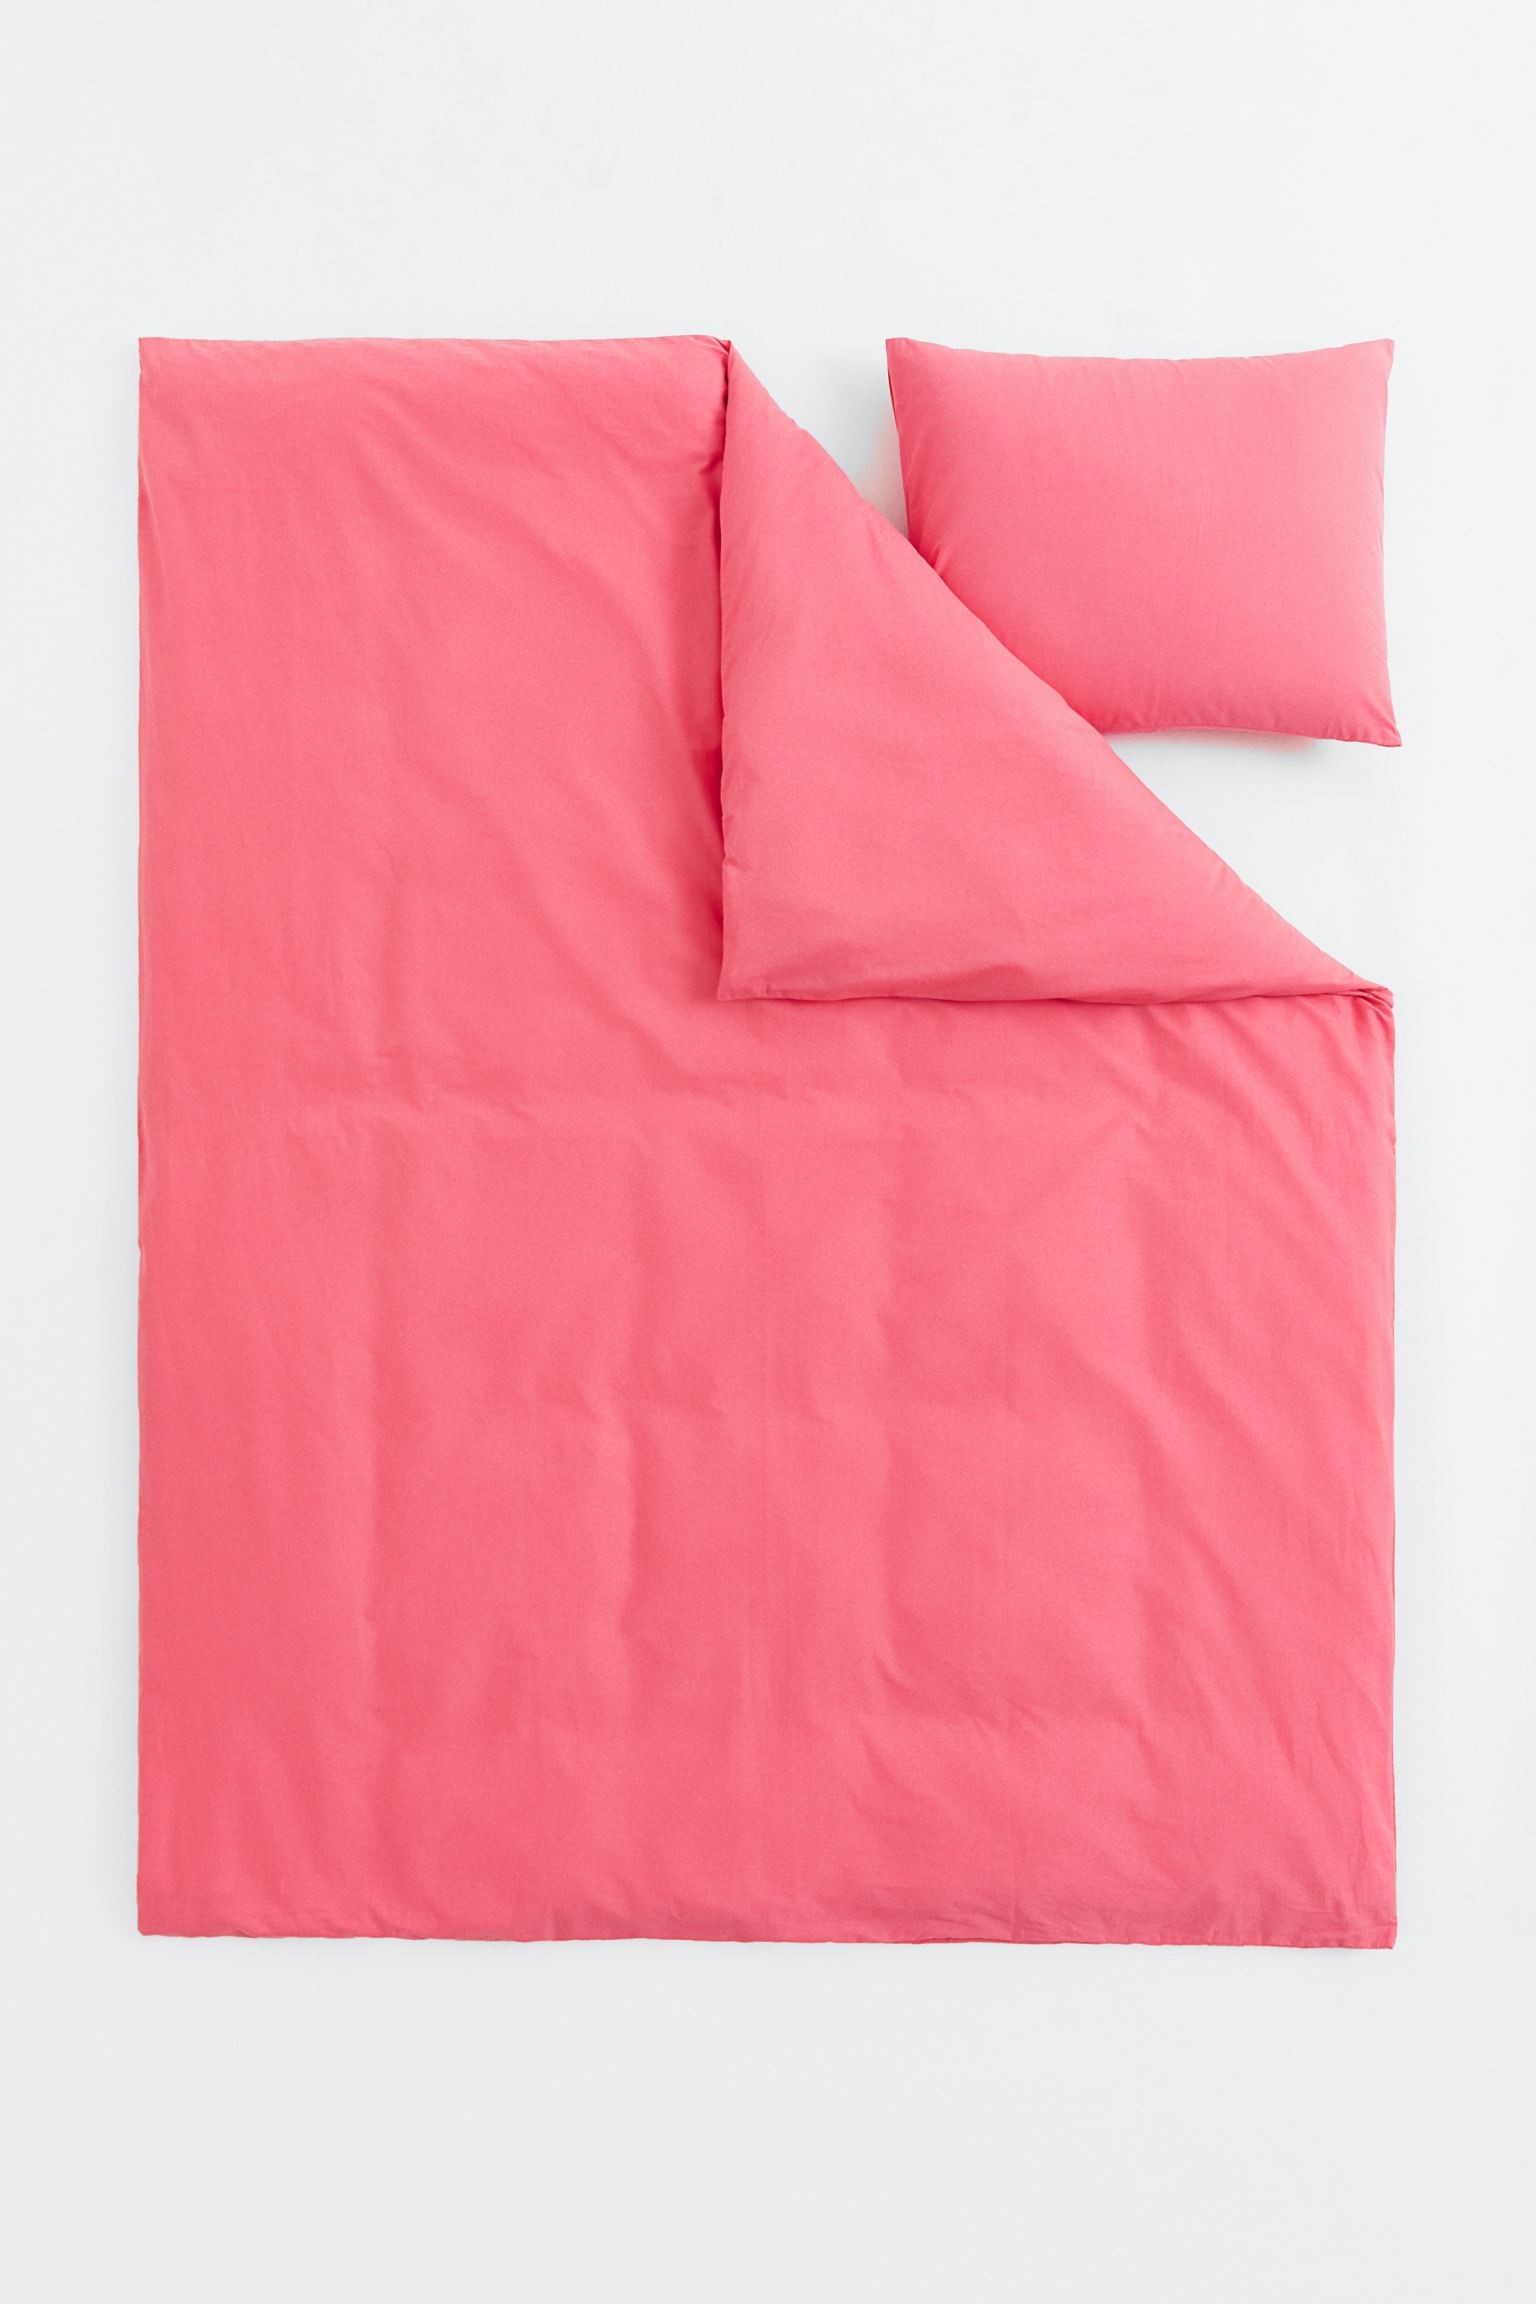 Односпальное постельное белье, Розовый, 150x200 + 50x60